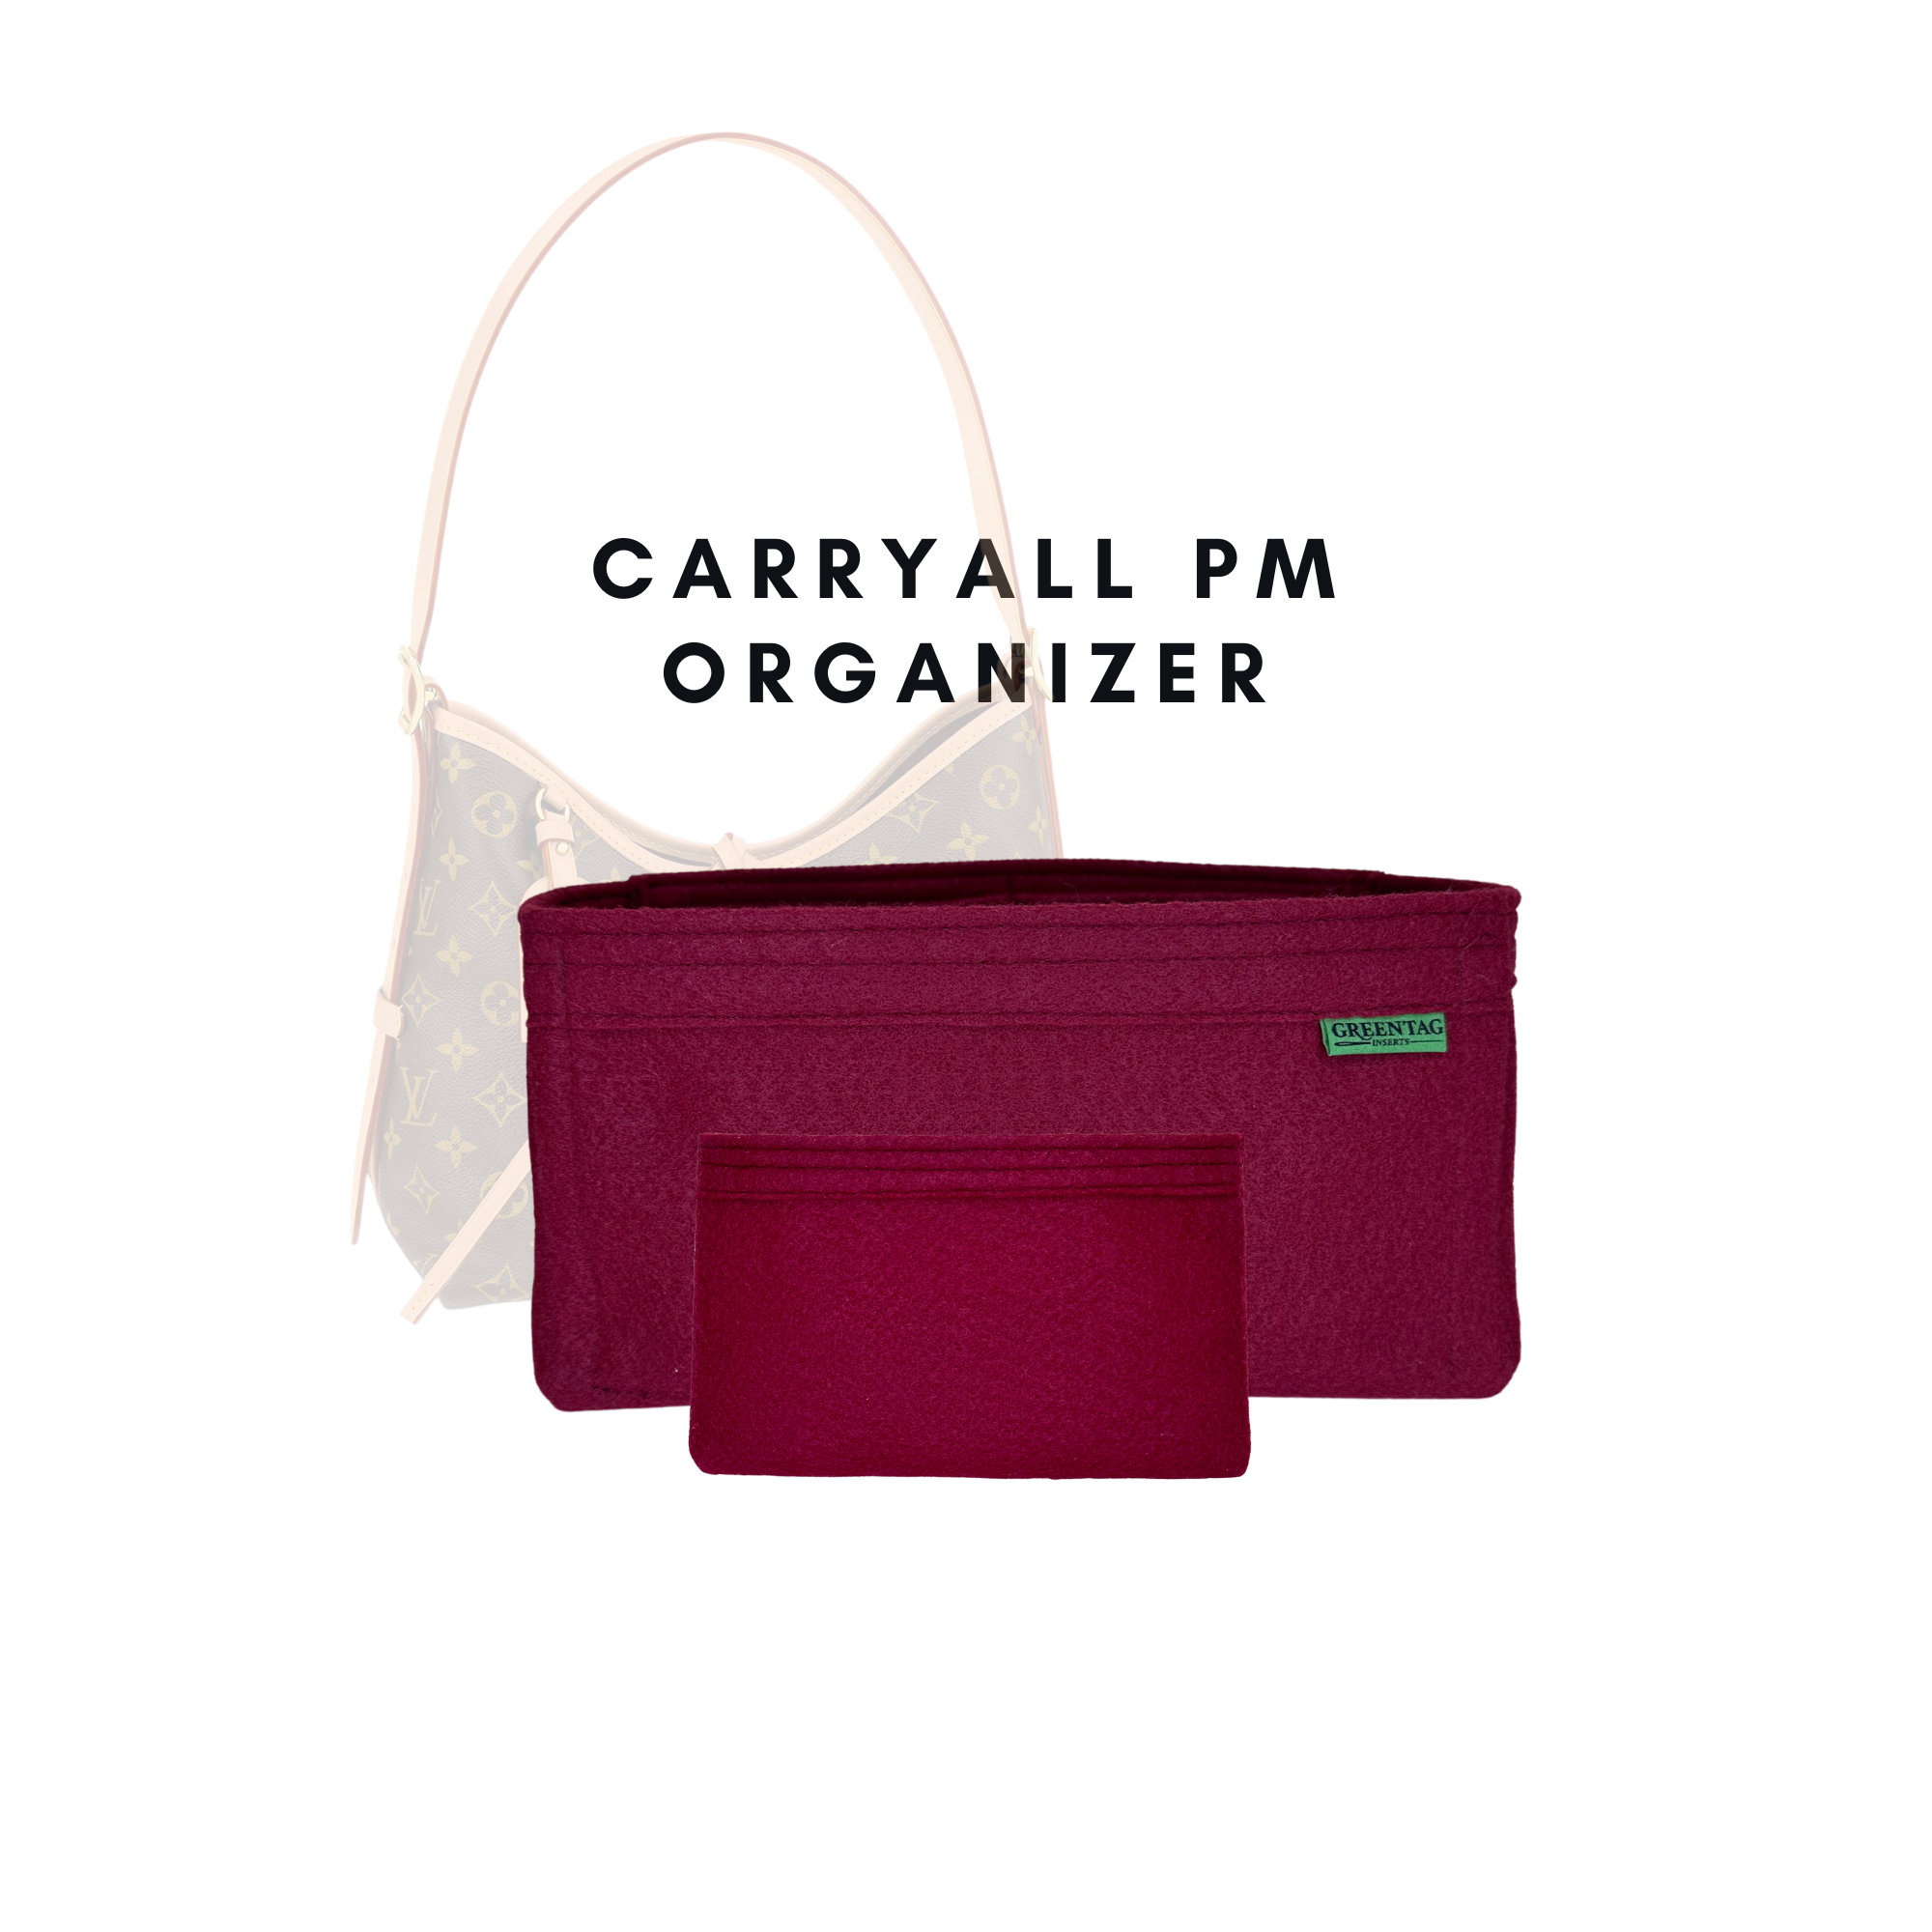 Bag Organizer For Carryall PM NM MM Handbag. Bag Insert For